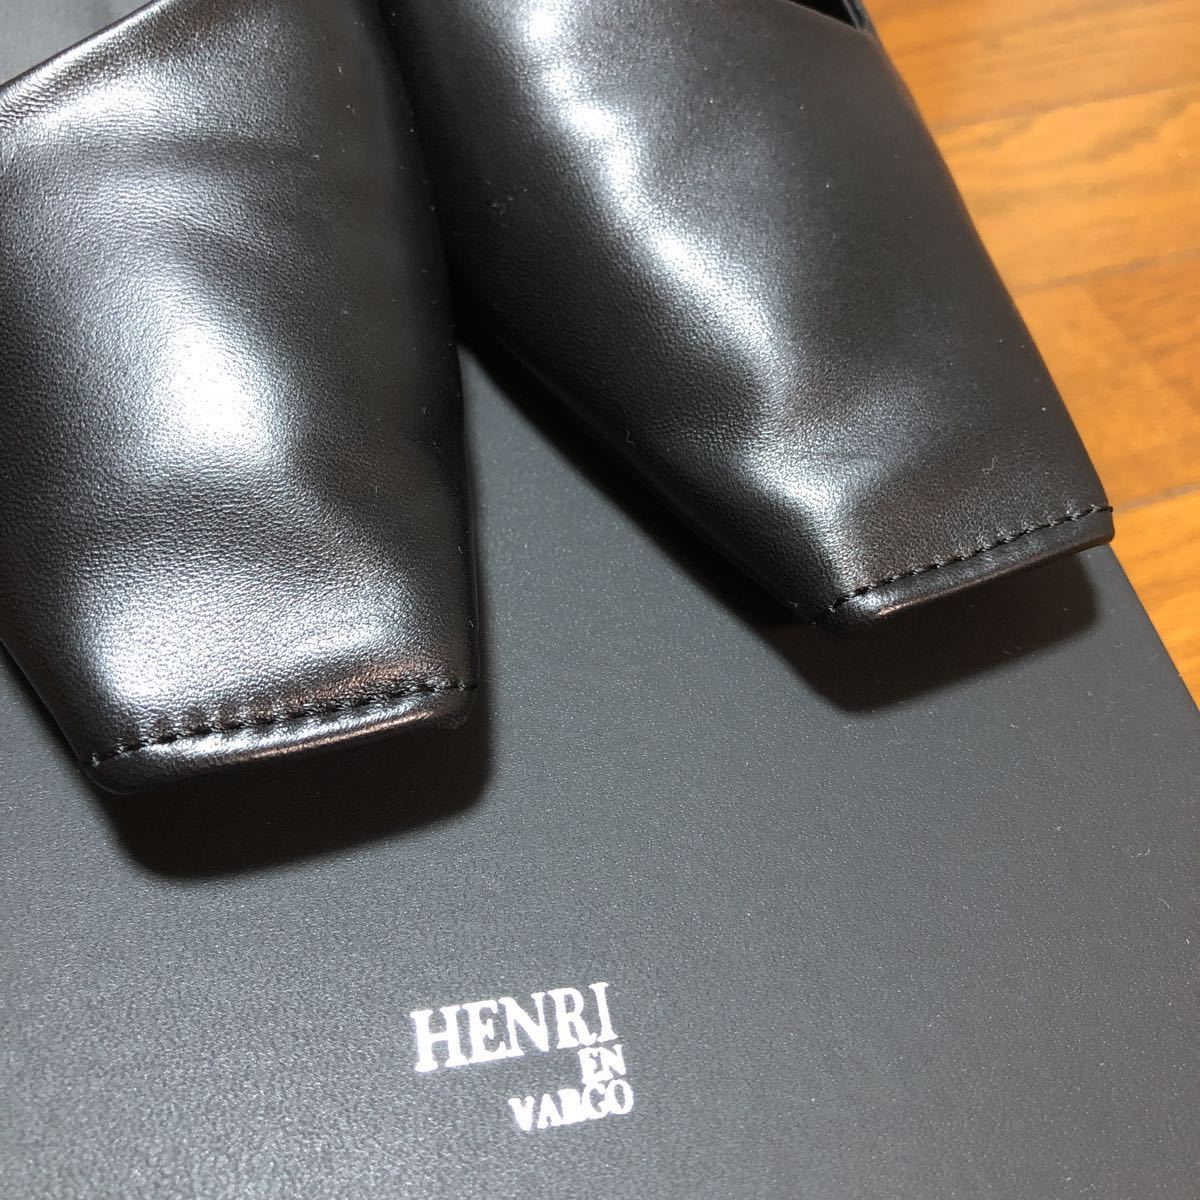 ( new goods unused goods )HENRI EN VARGOhenlienva-go square tu flat shoes pumps 37